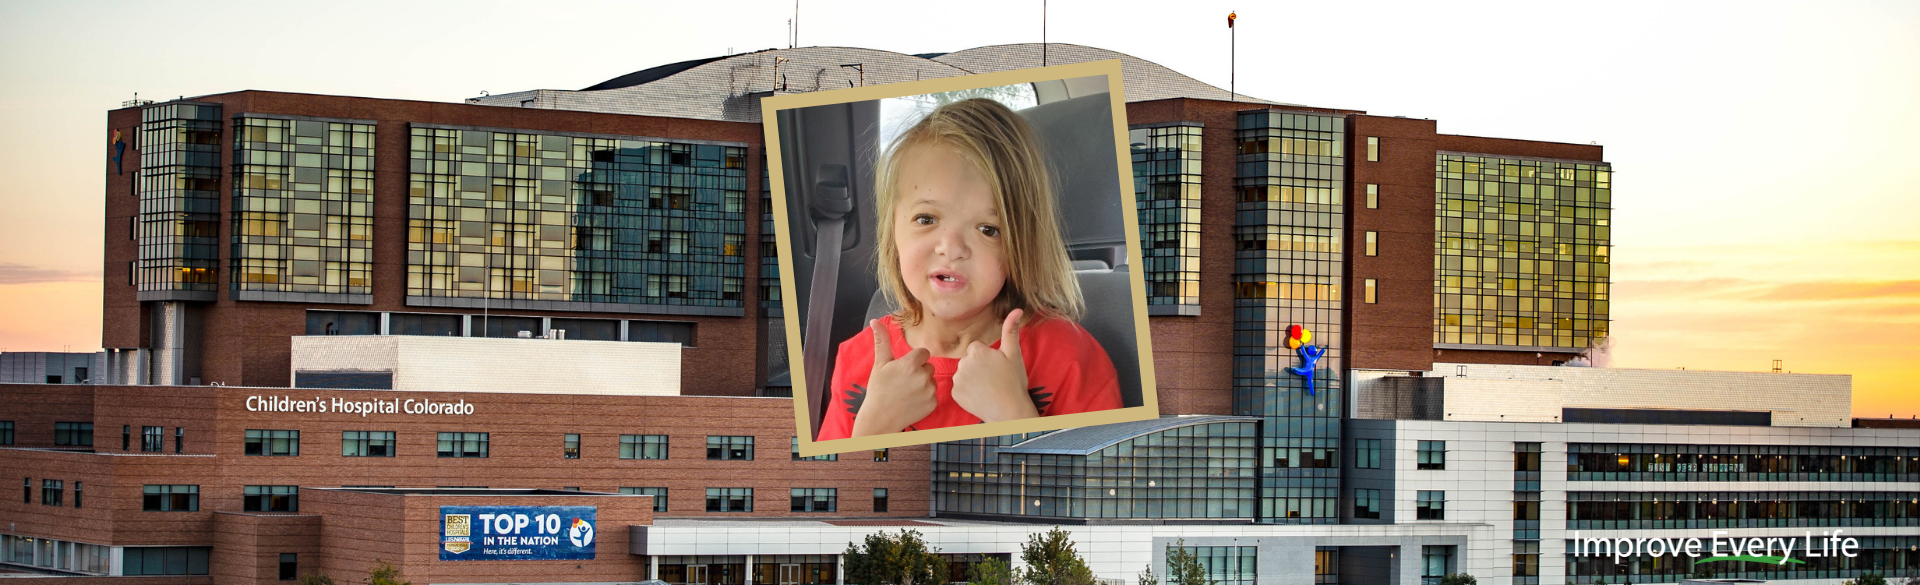 Danner Plumhoff Craniofacial Crouzon Patient | Children's Hospital Colorado | Denver, CO